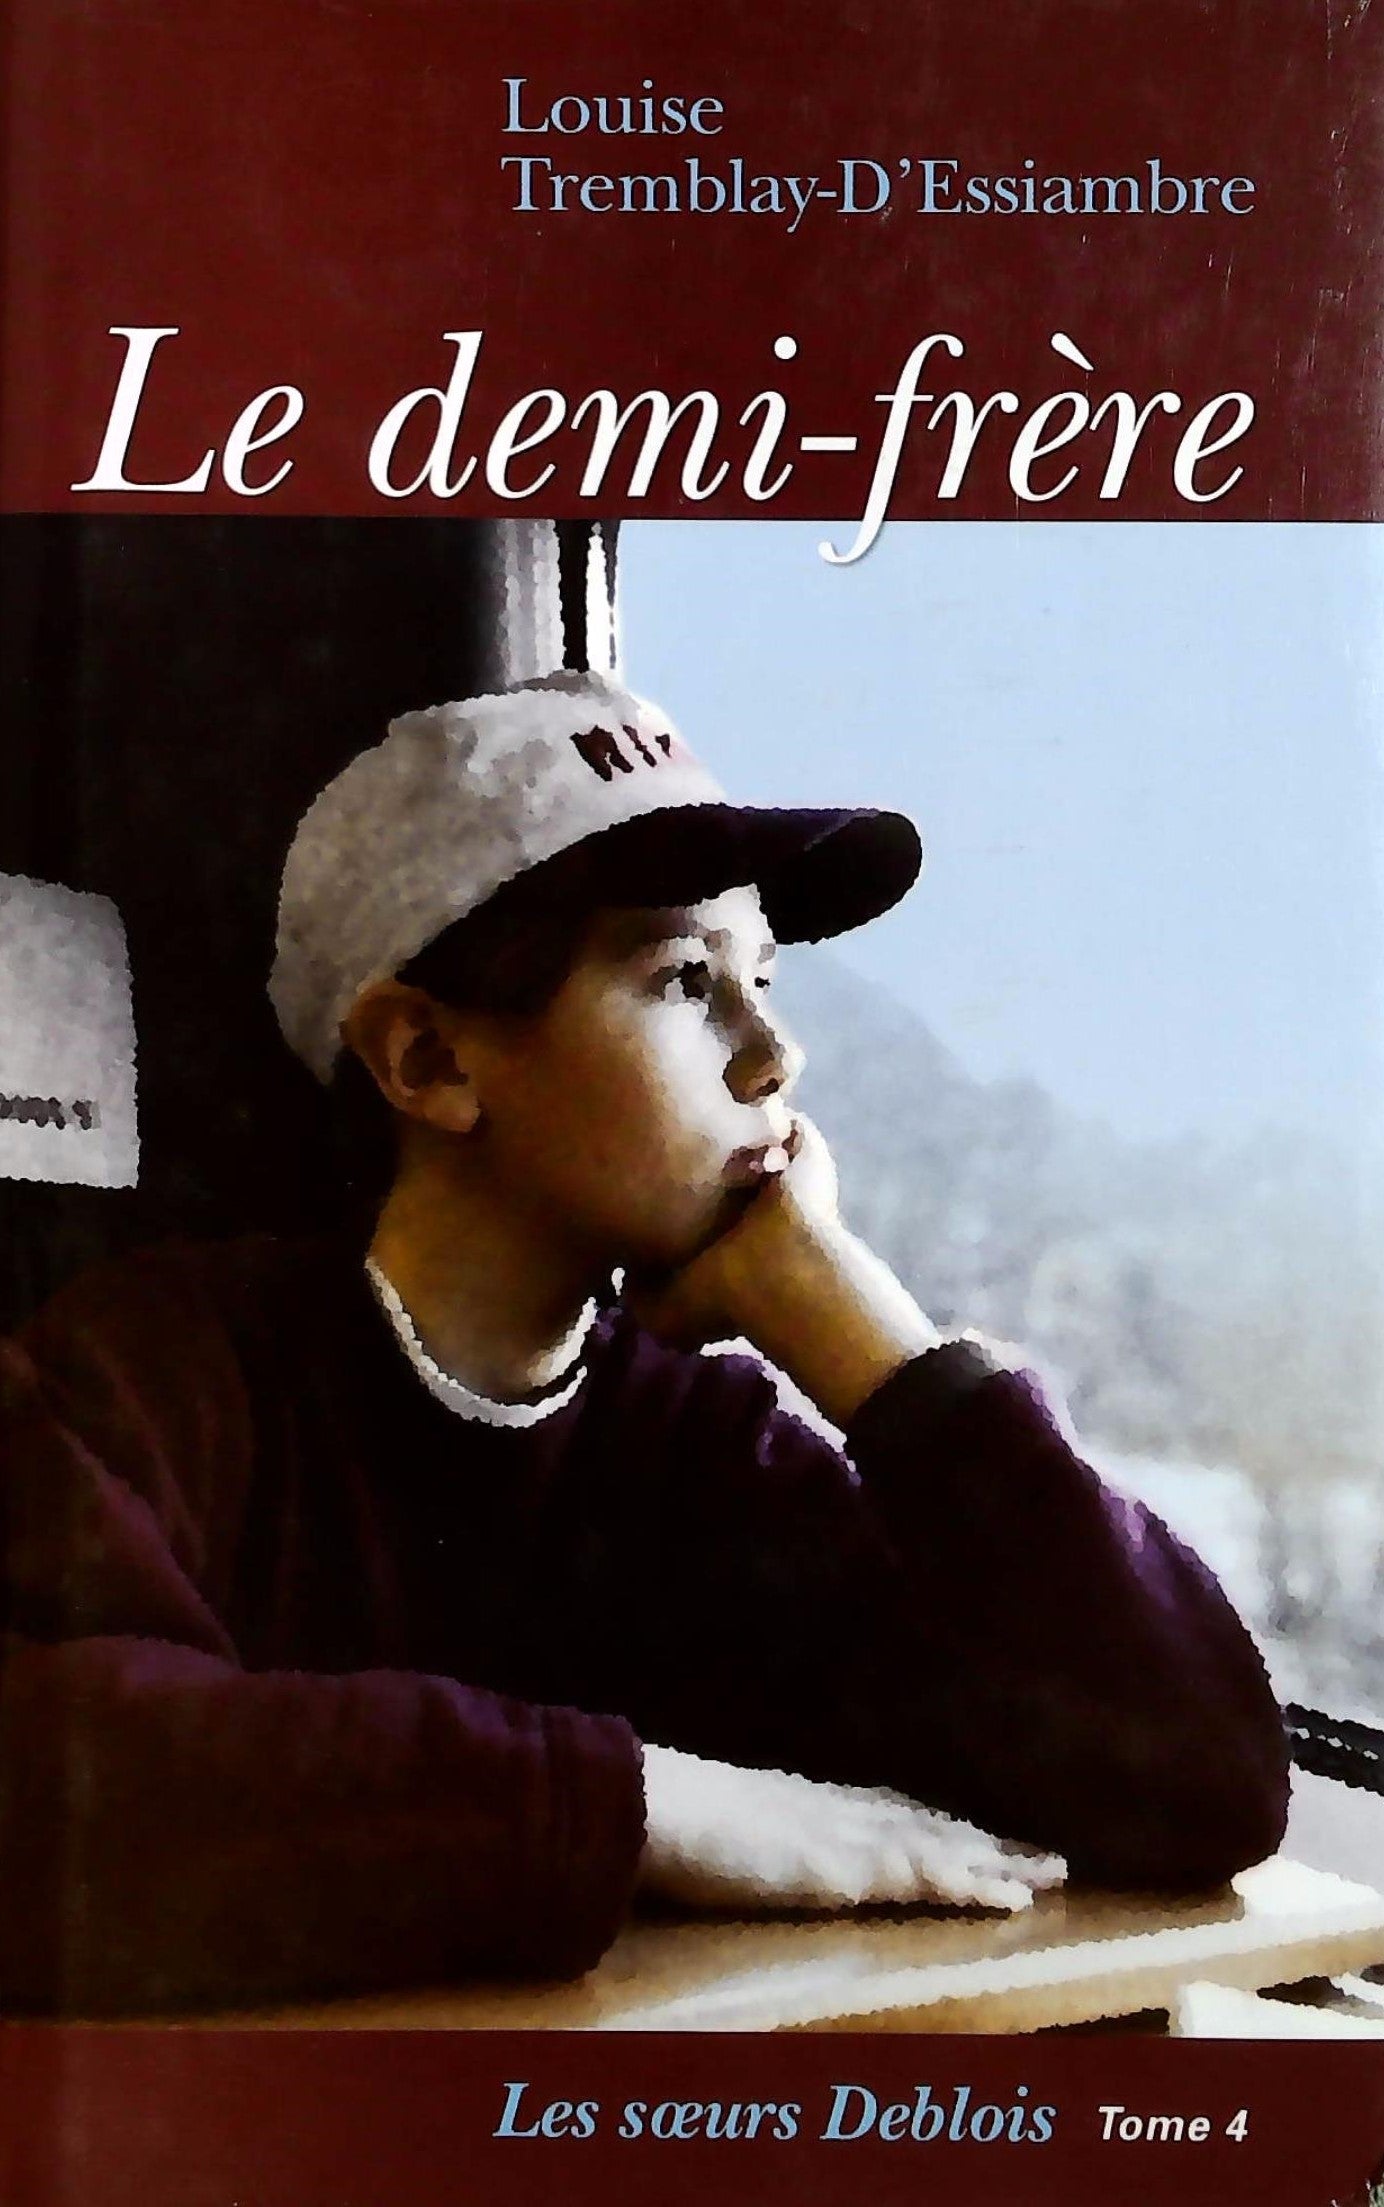 Livre ISBN 2894307403 Les soeurs Deblois # 4 : Le demi-frère (Louise Tremblay-D'Essiambre)